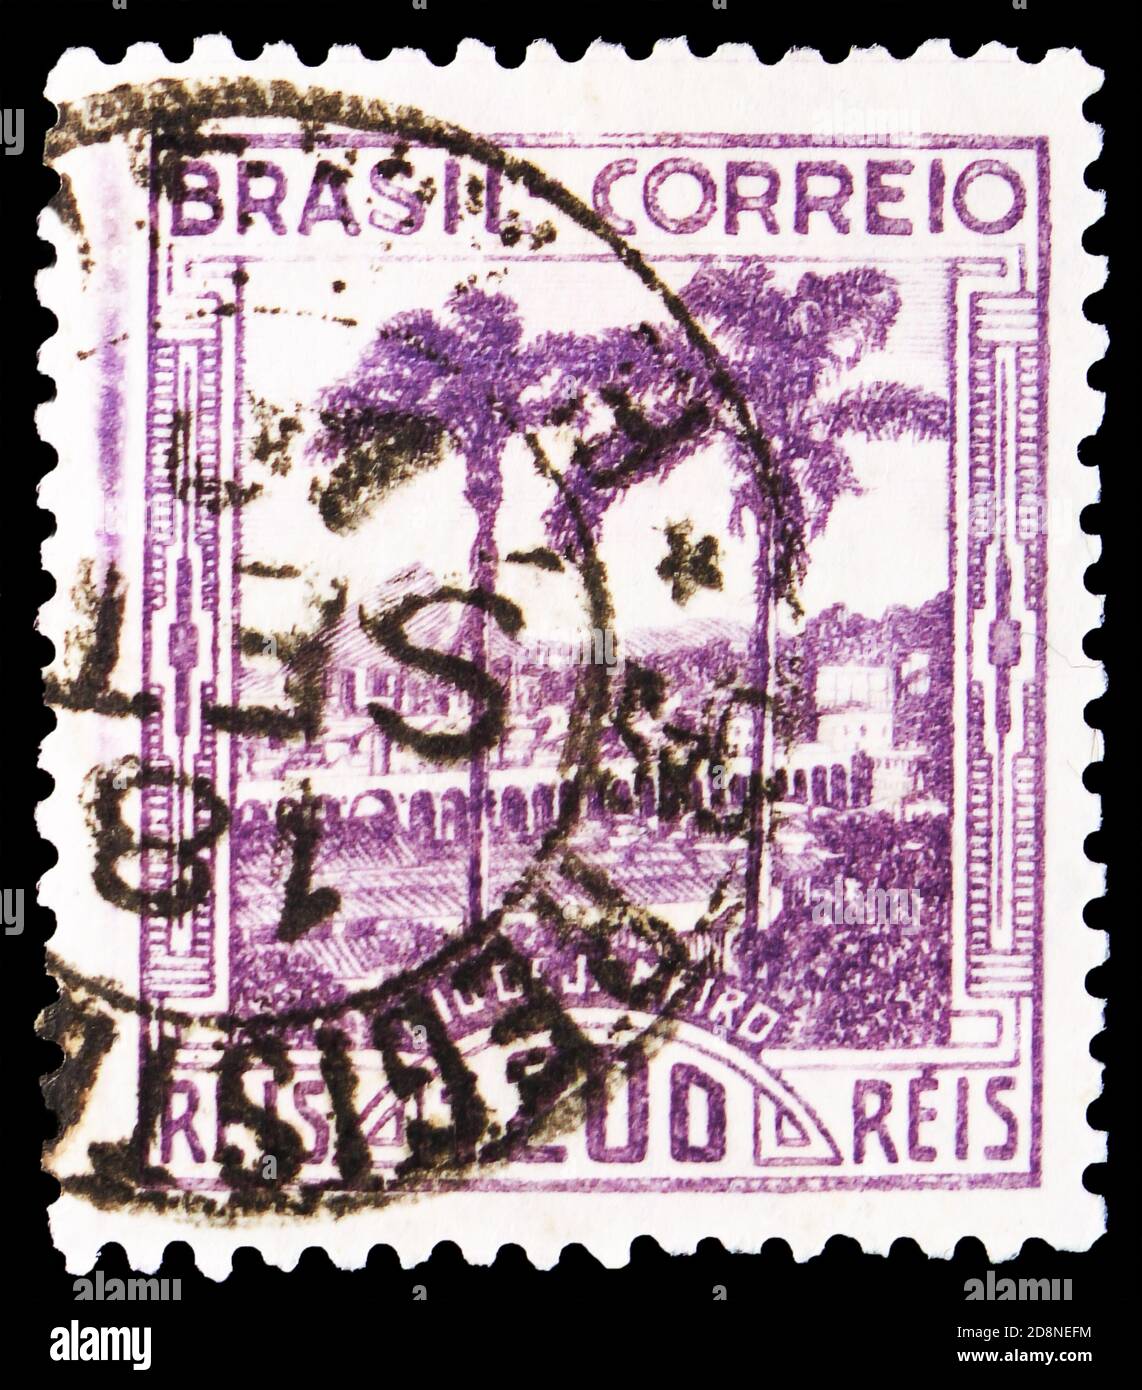 MOSCOU, RUSSIE - 8 OCTOBRE 2020: Timbre-poste imprimé au Brésil montre la vue de 'Arcos' - Rio de Janeiro, vers 1939 Banque D'Images